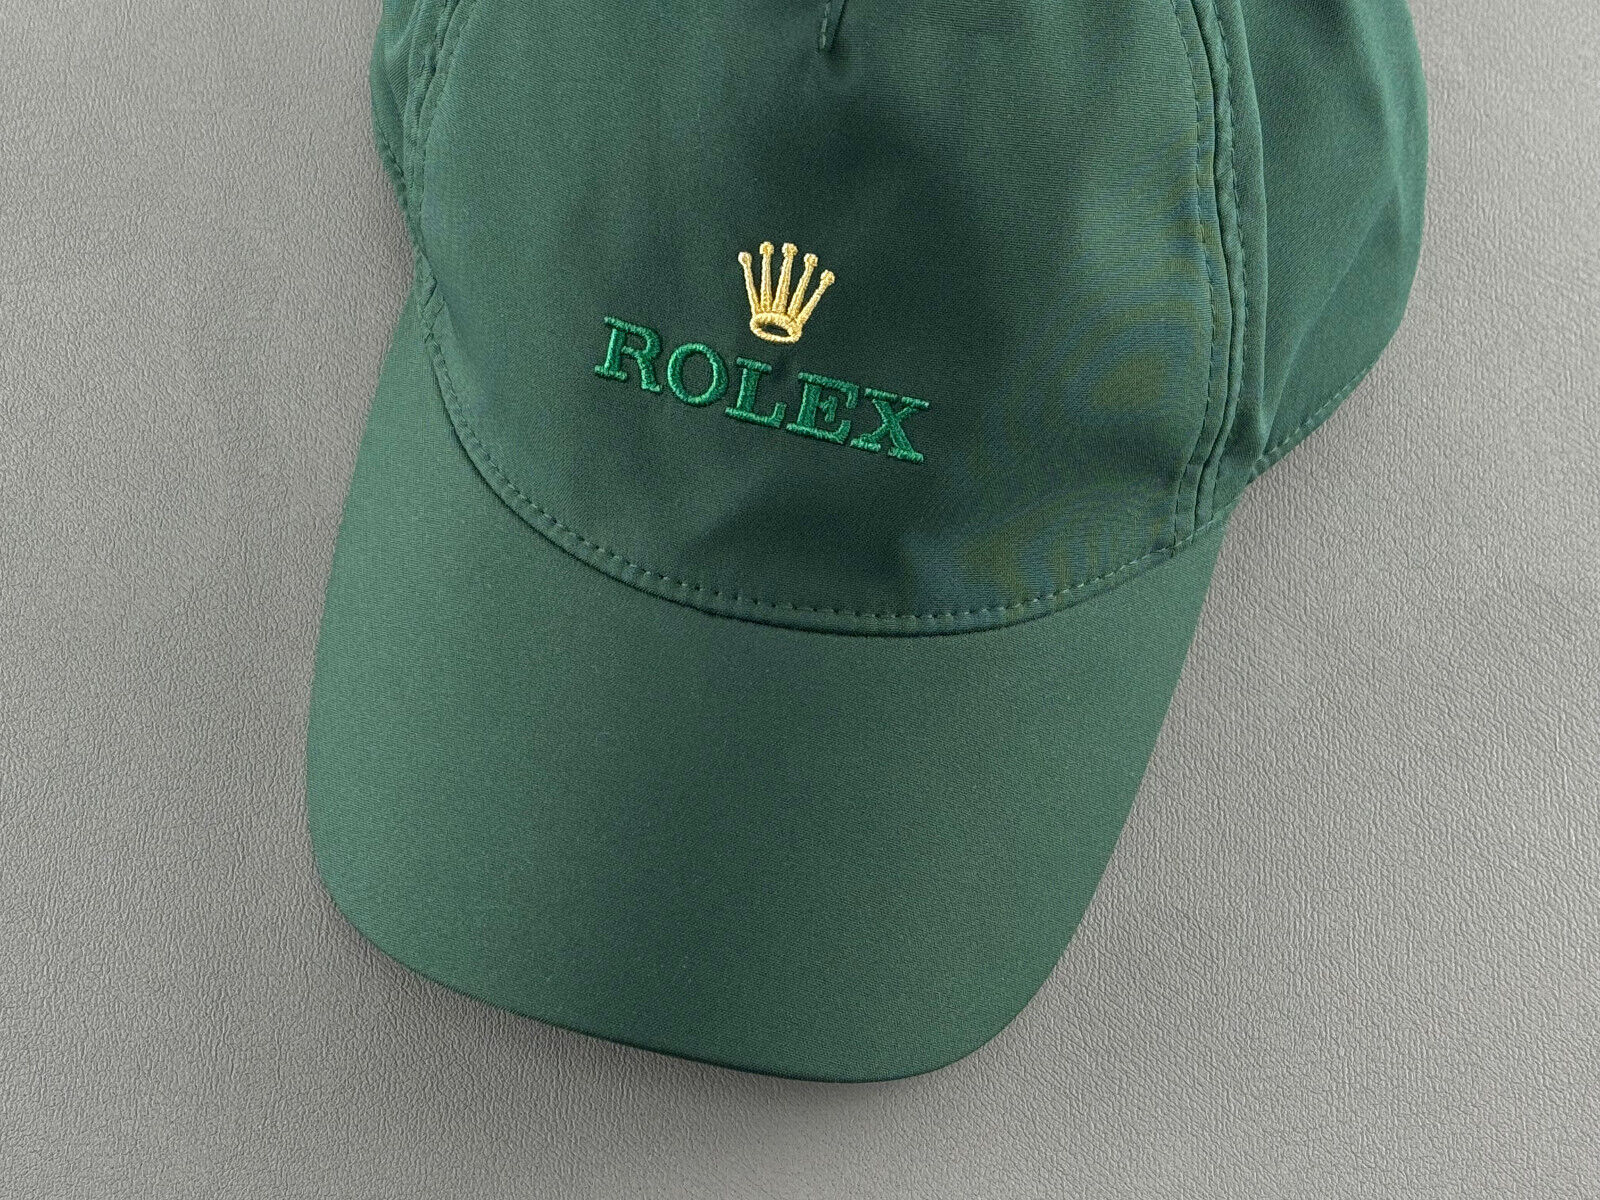  Rolex Cap Kappe Mütze Hat Baseballhat Hut Grün Green